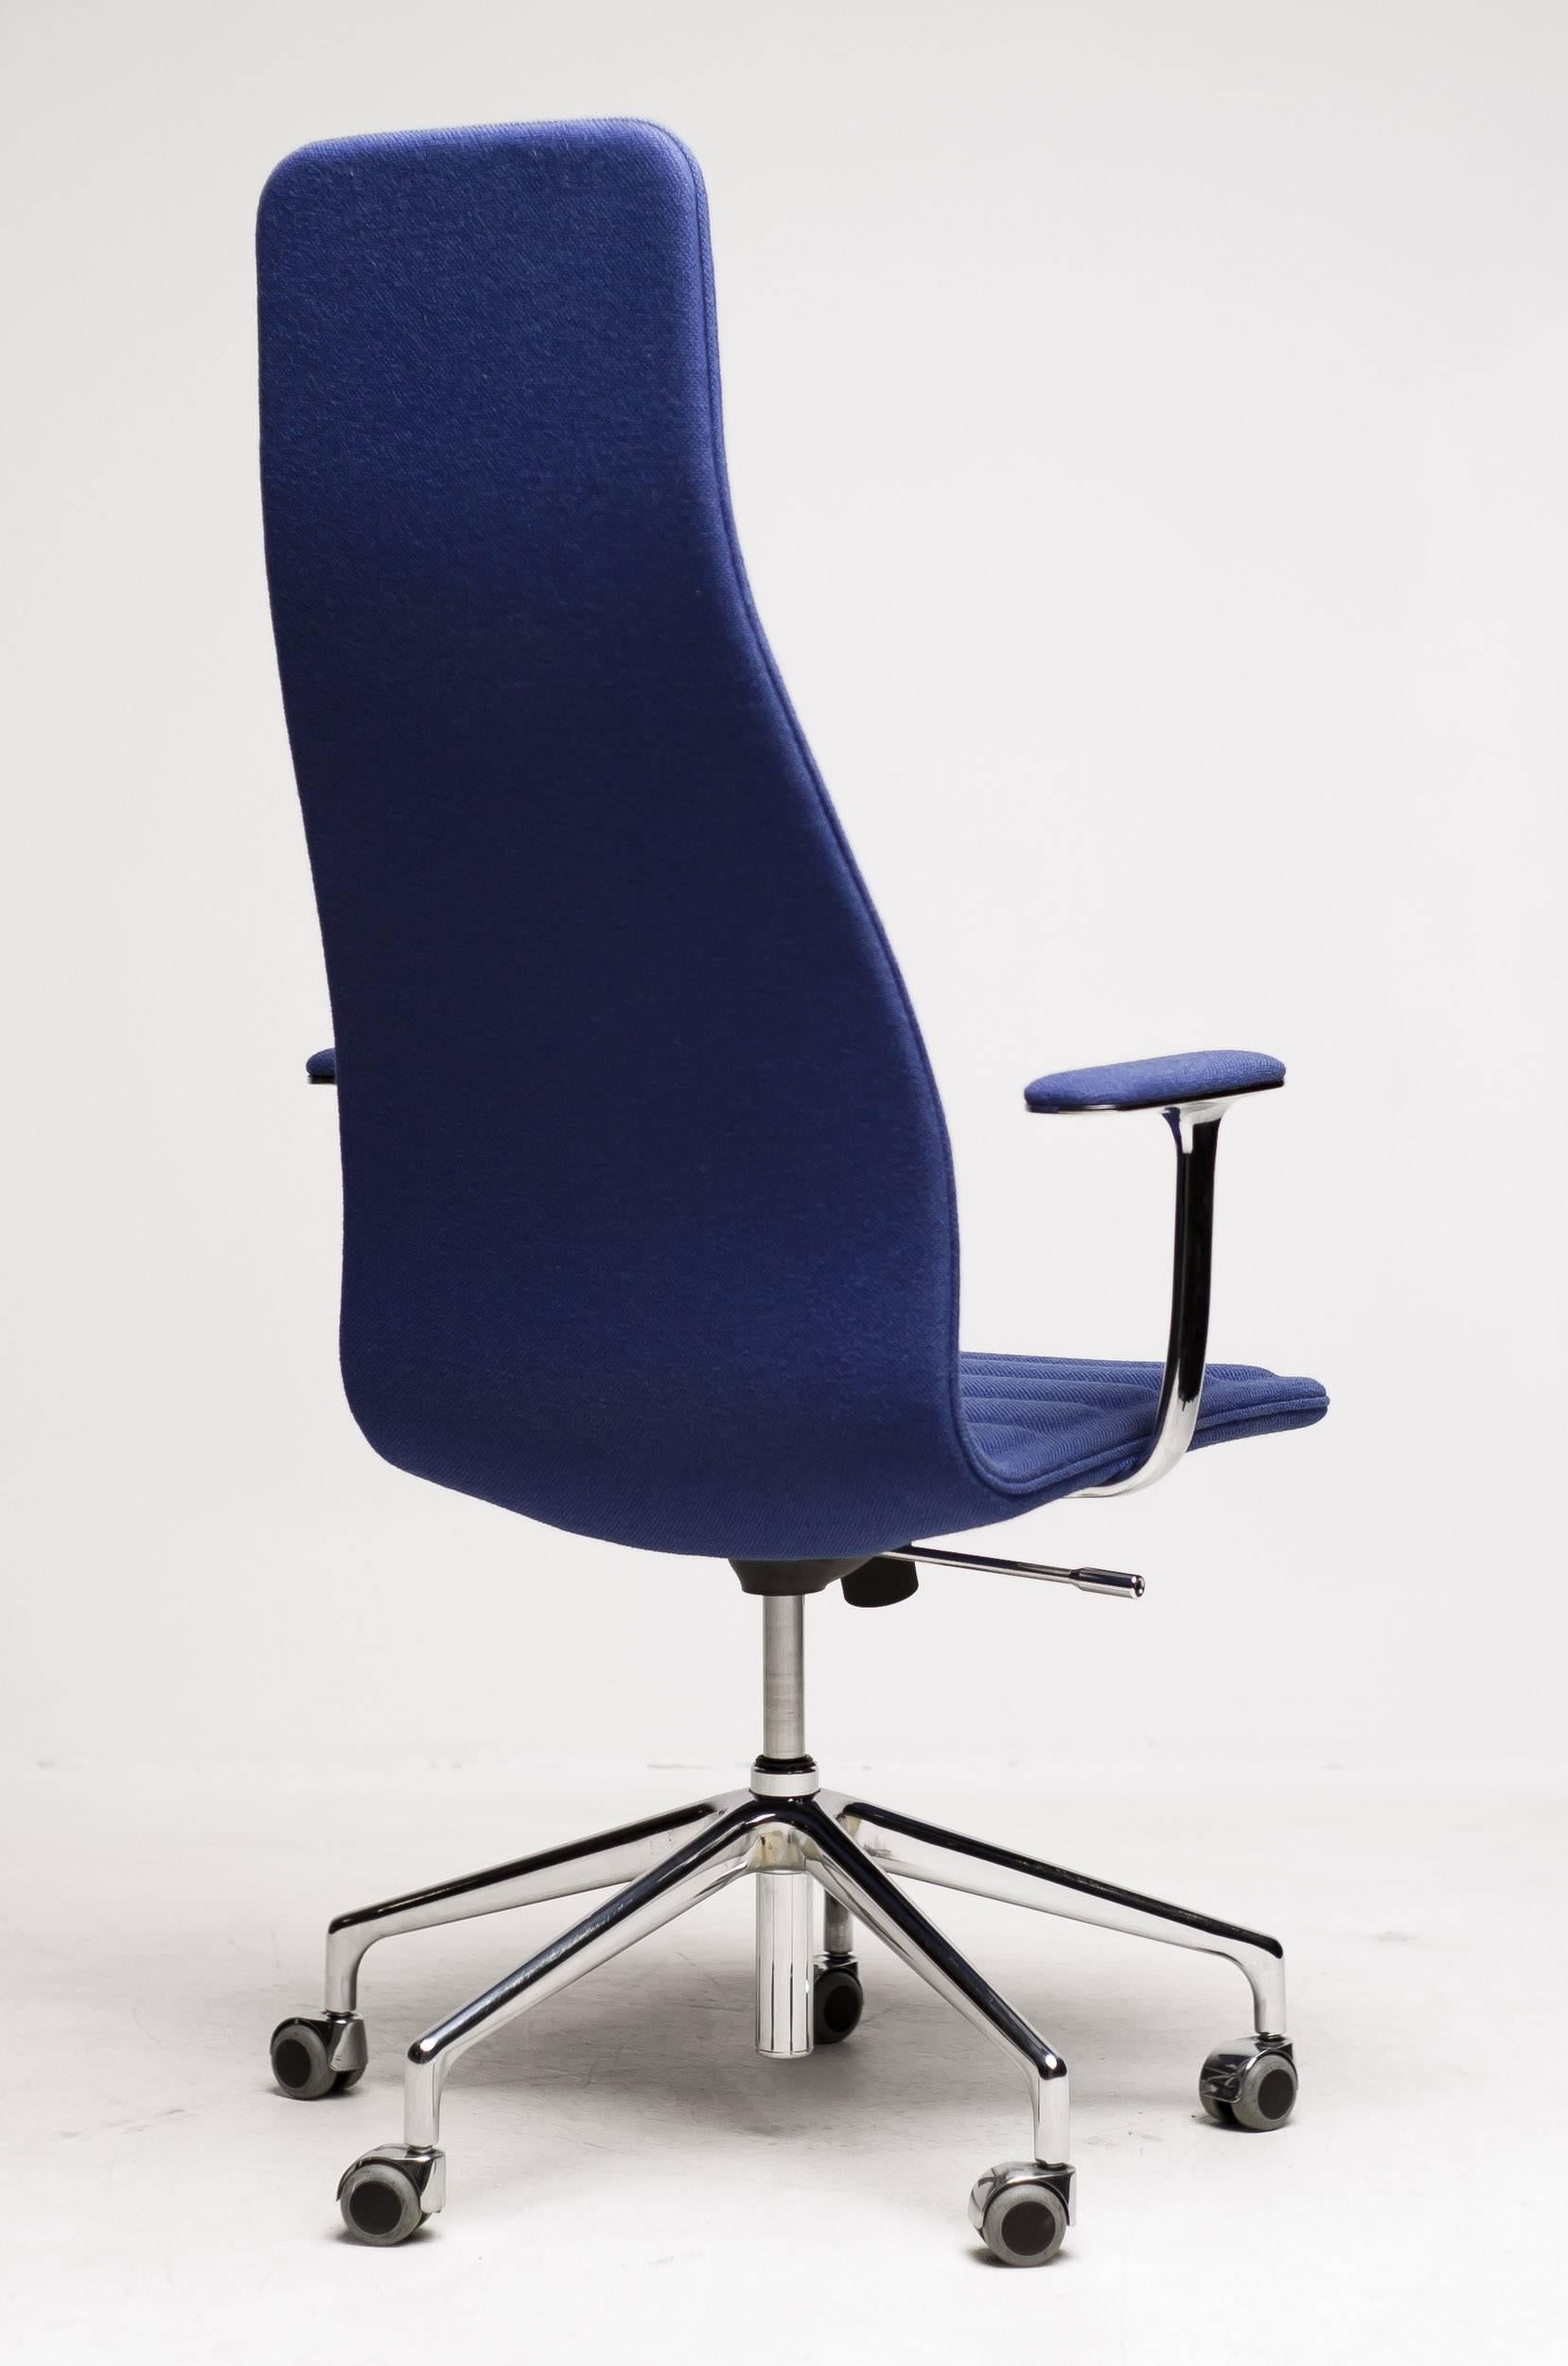 Modern High Back Lotus Office Chair Designed by Jasper Morrison